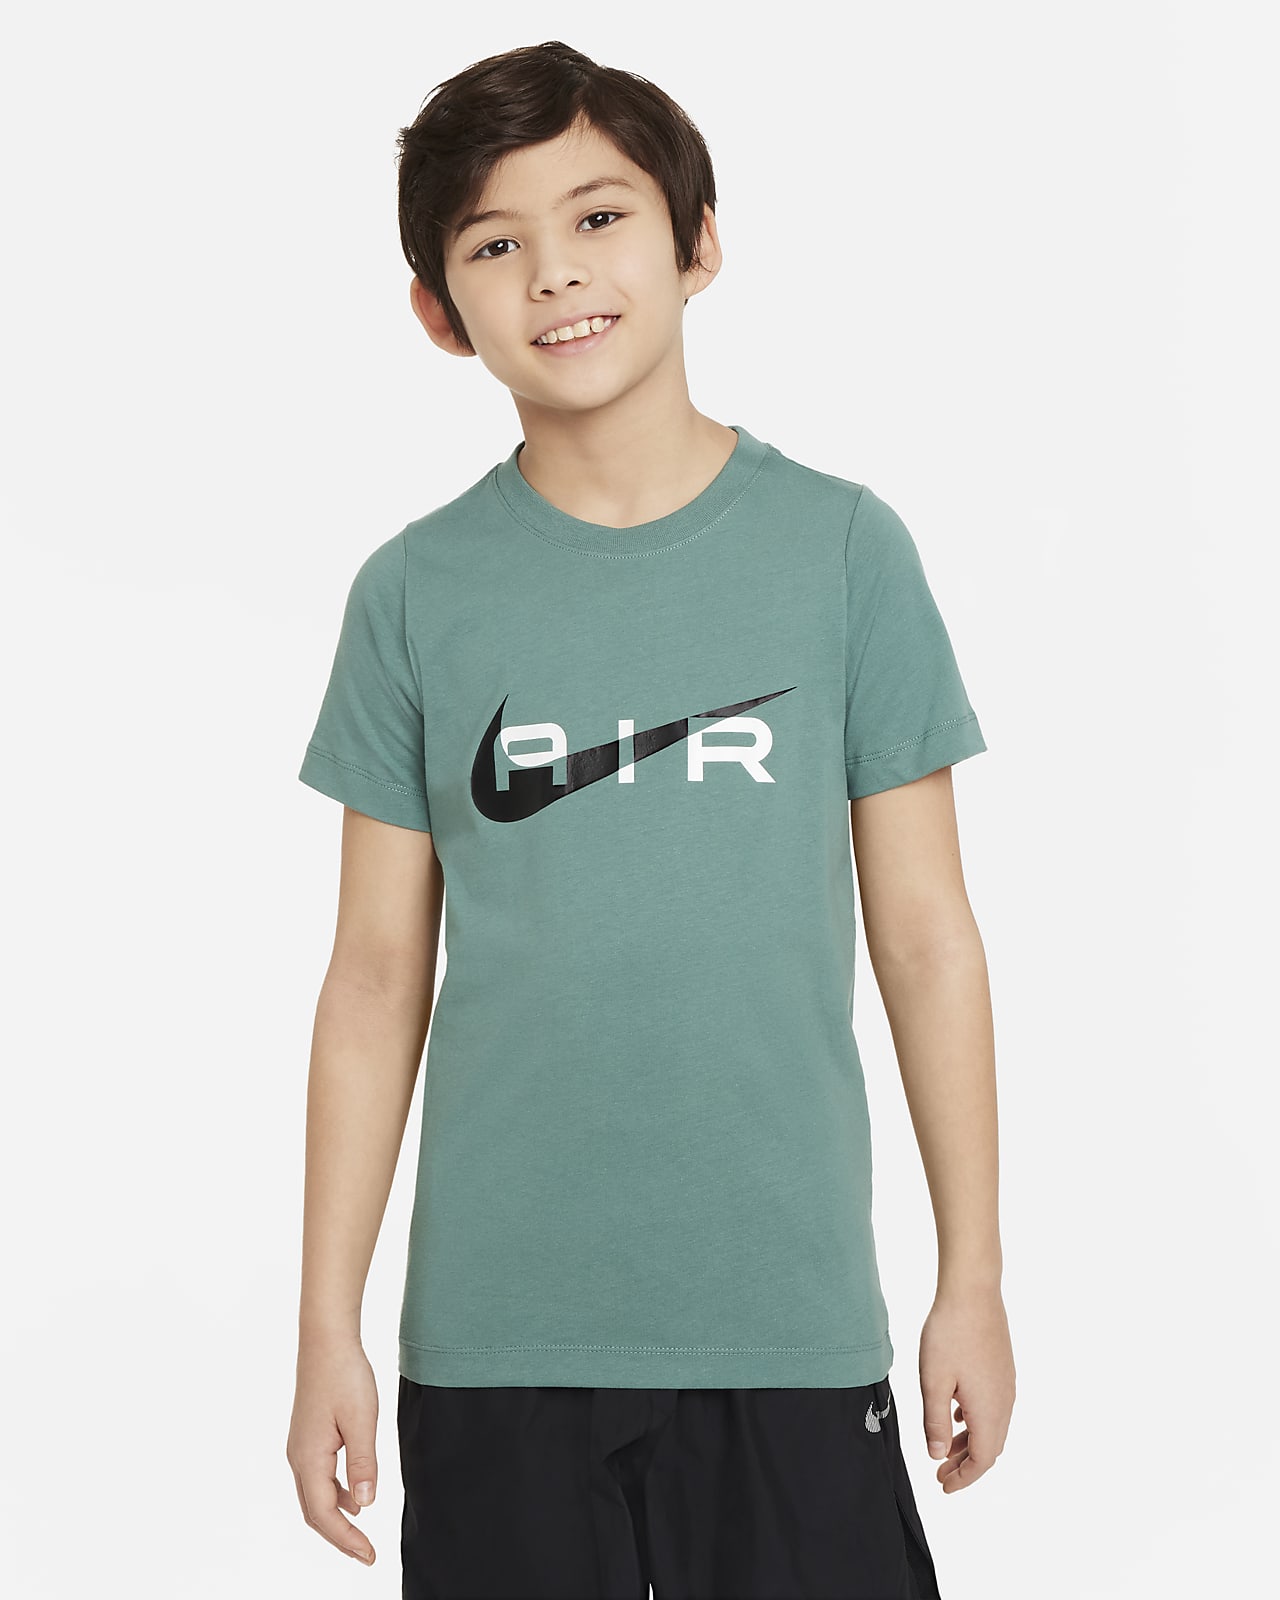 Nike Air T-Shirt für ältere Kinder (Jungen)